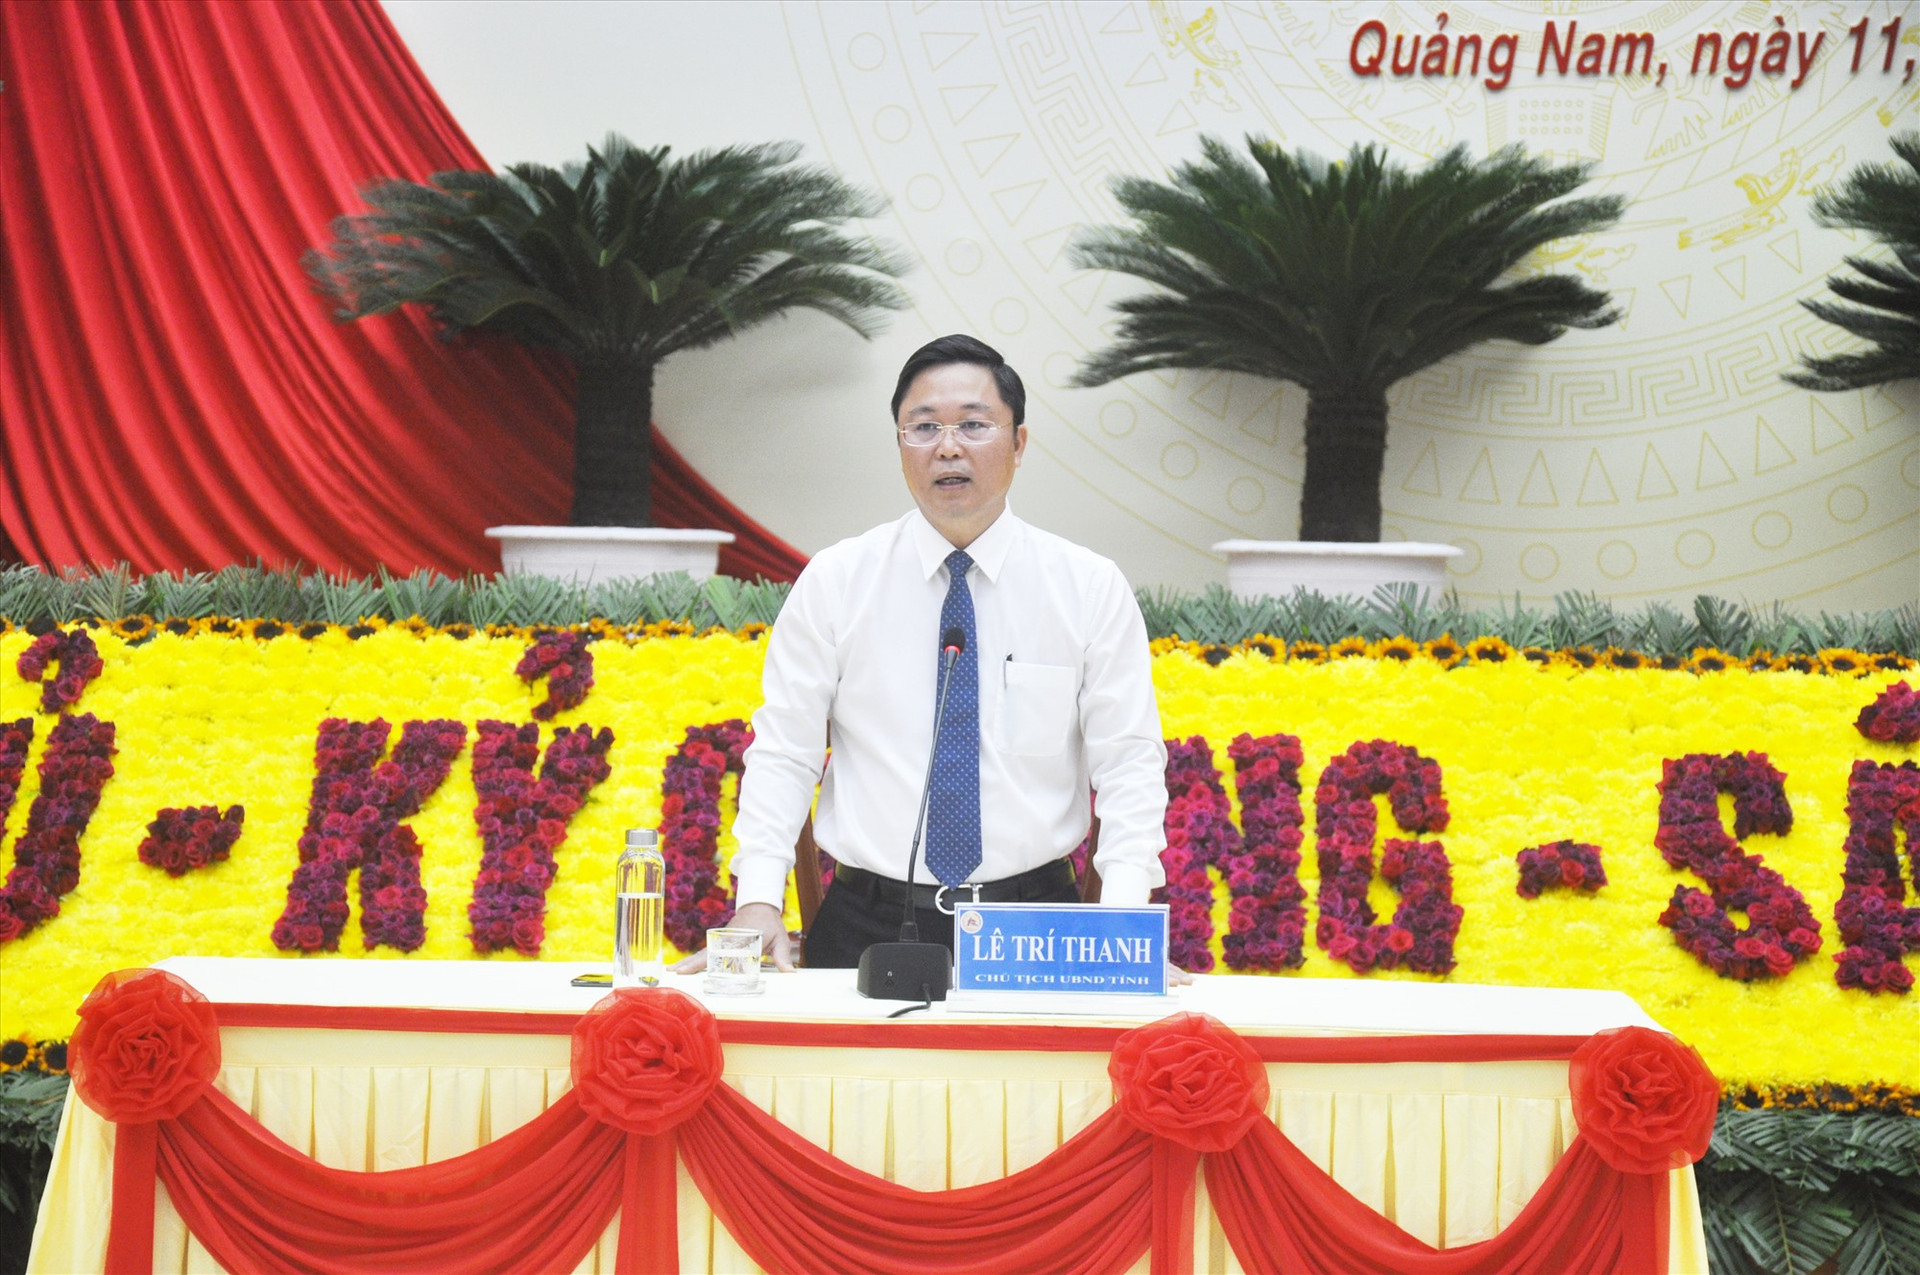 Phó Bí thư Tỉnh ủy, Chủ tịch UBND tỉnh Lê Trí Thanh thông tin về định hướng phát triển của Quảng Nam đến năm 2025, tầm nhìn đến năm 2030 cho các cơ quan báo chí. Ảnh: N.Đ